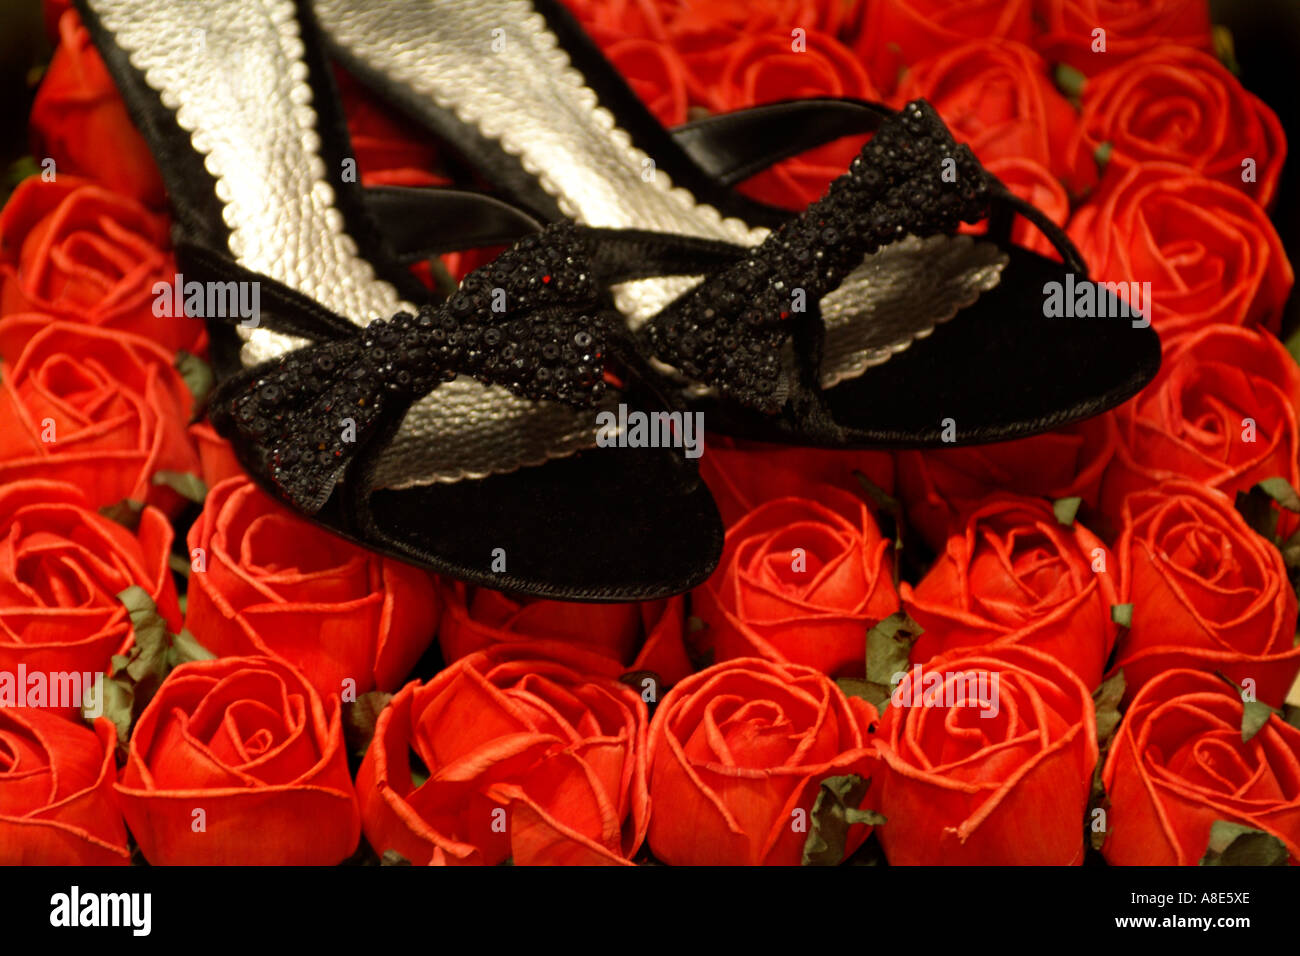 Schwarze High Heel Schuhe auf einem Bett aus roten Rosen Stockfotografie -  Alamy